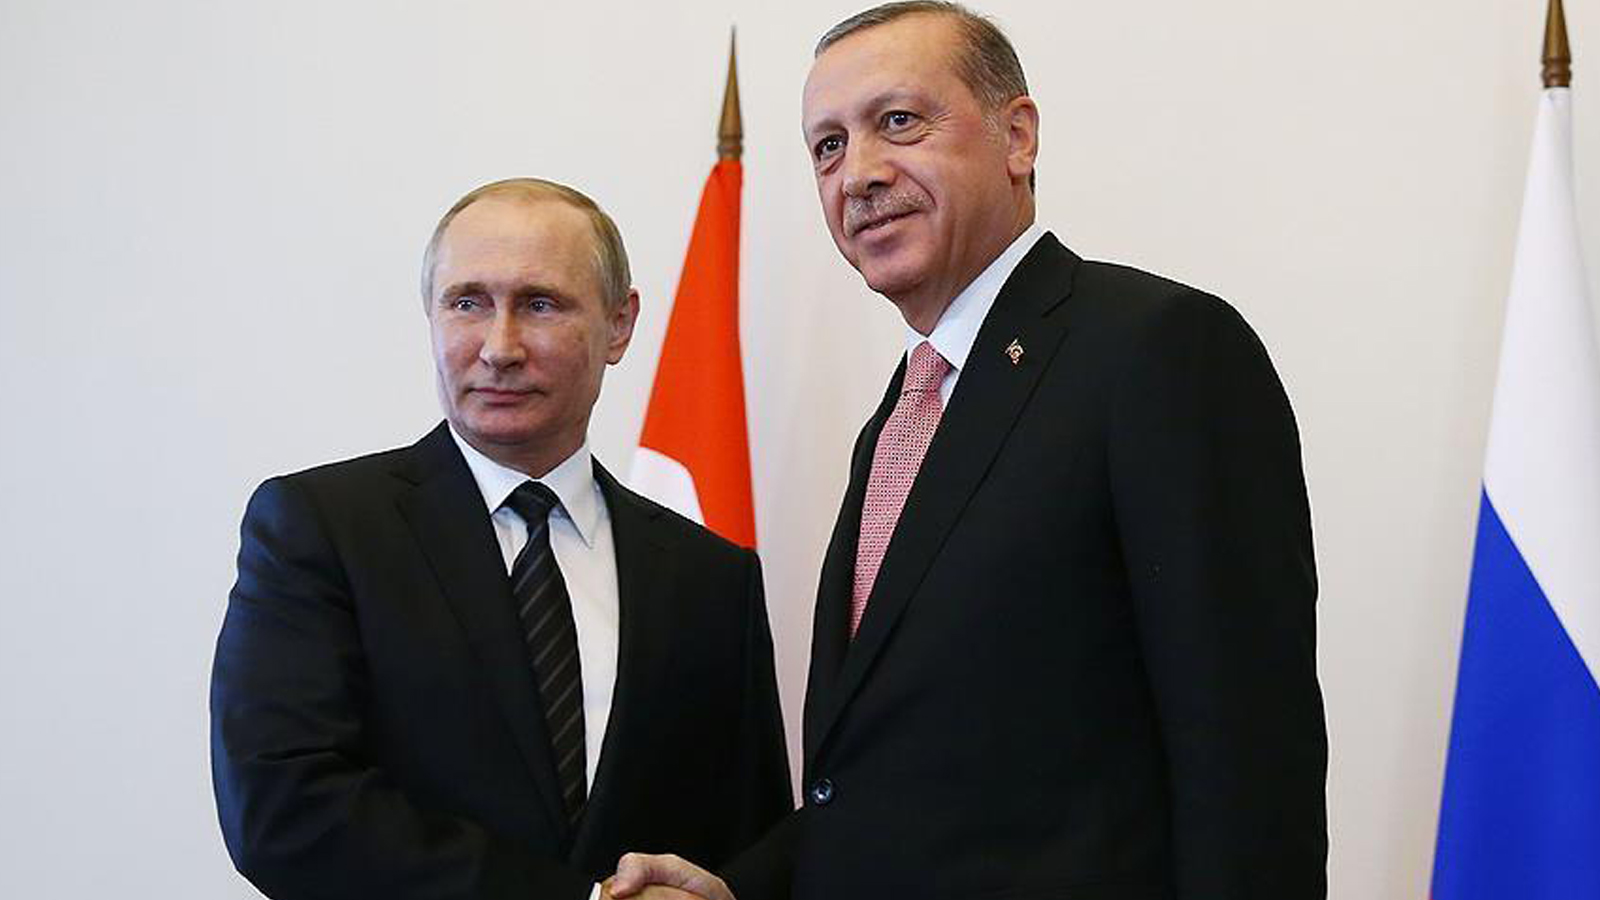 أردوغان: بوتين ليس محامياً عن الأسد.. هو "أبلغني بذلك"